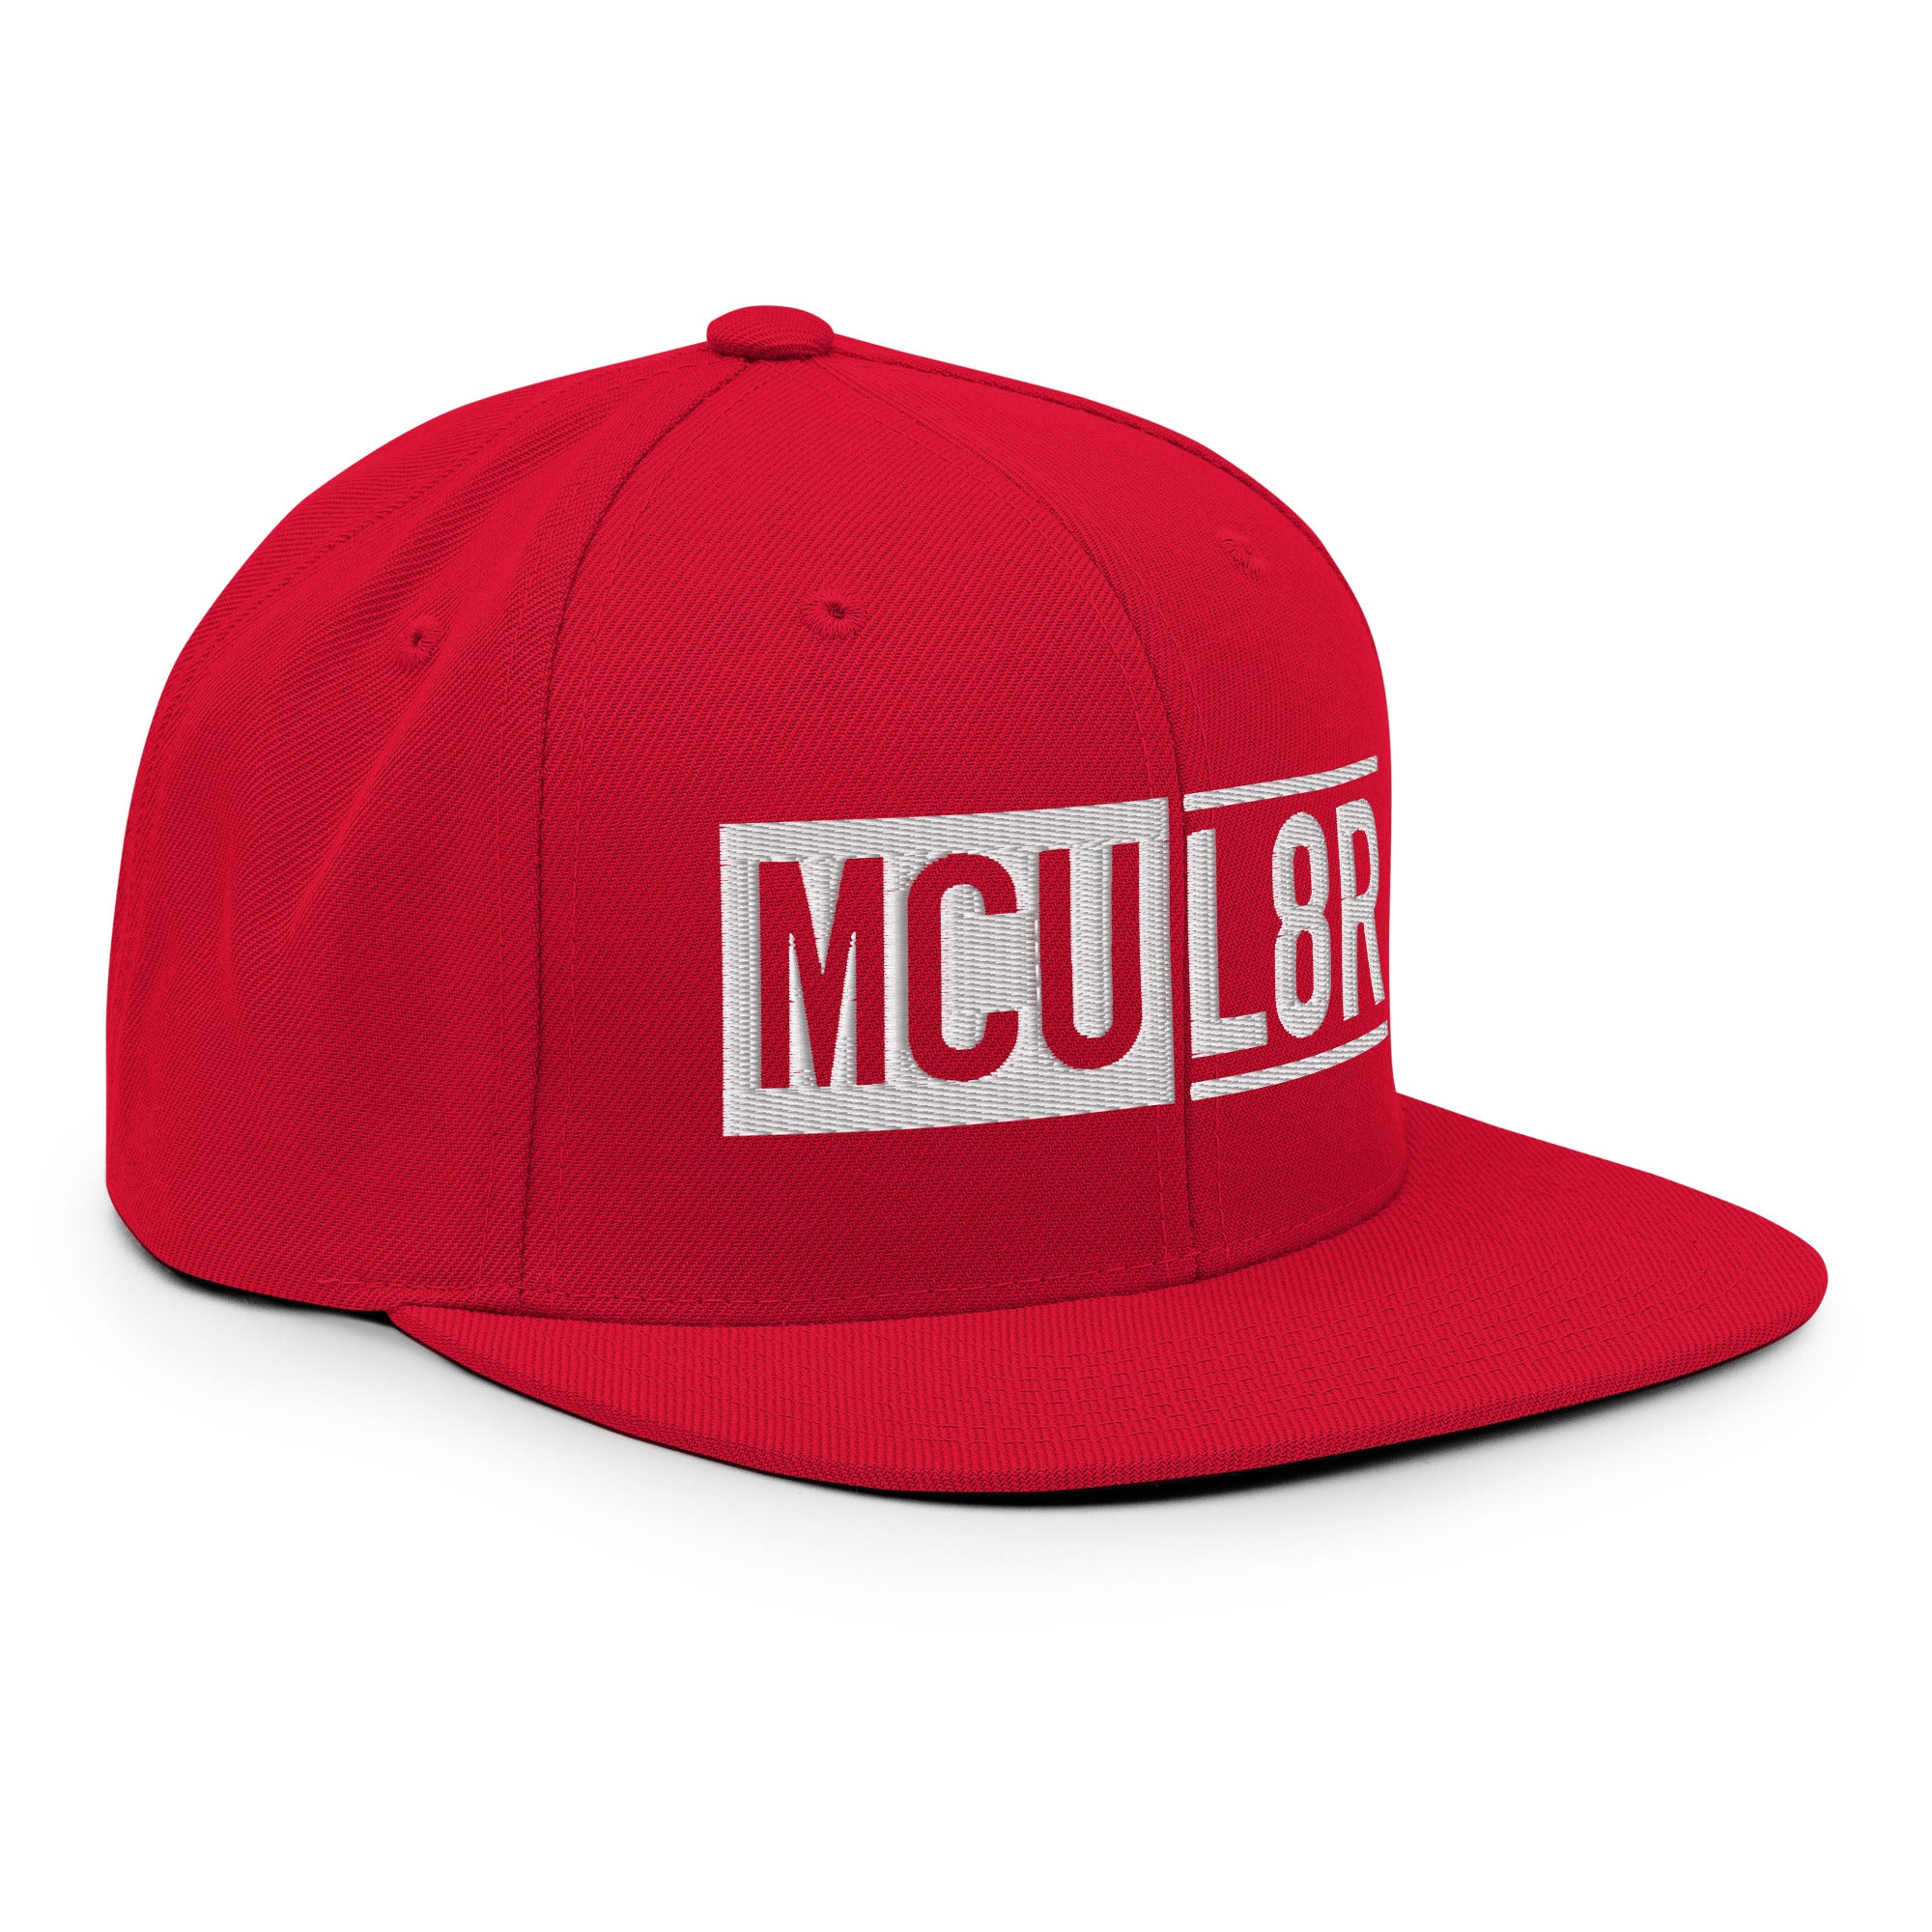 MCU L8R Red Snapback